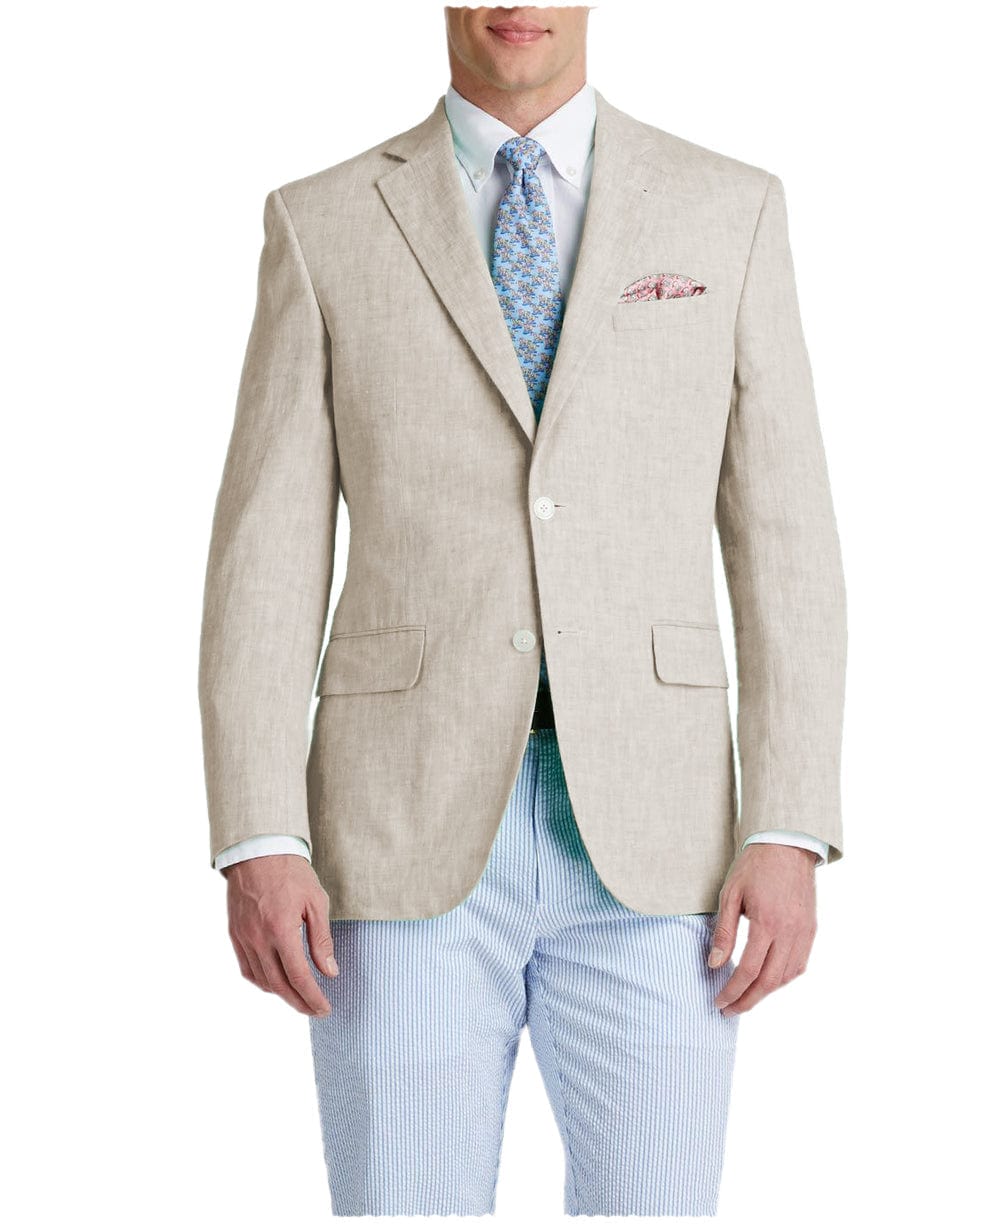 aesido Men's Suit Notch Lapel Double Button Blazer